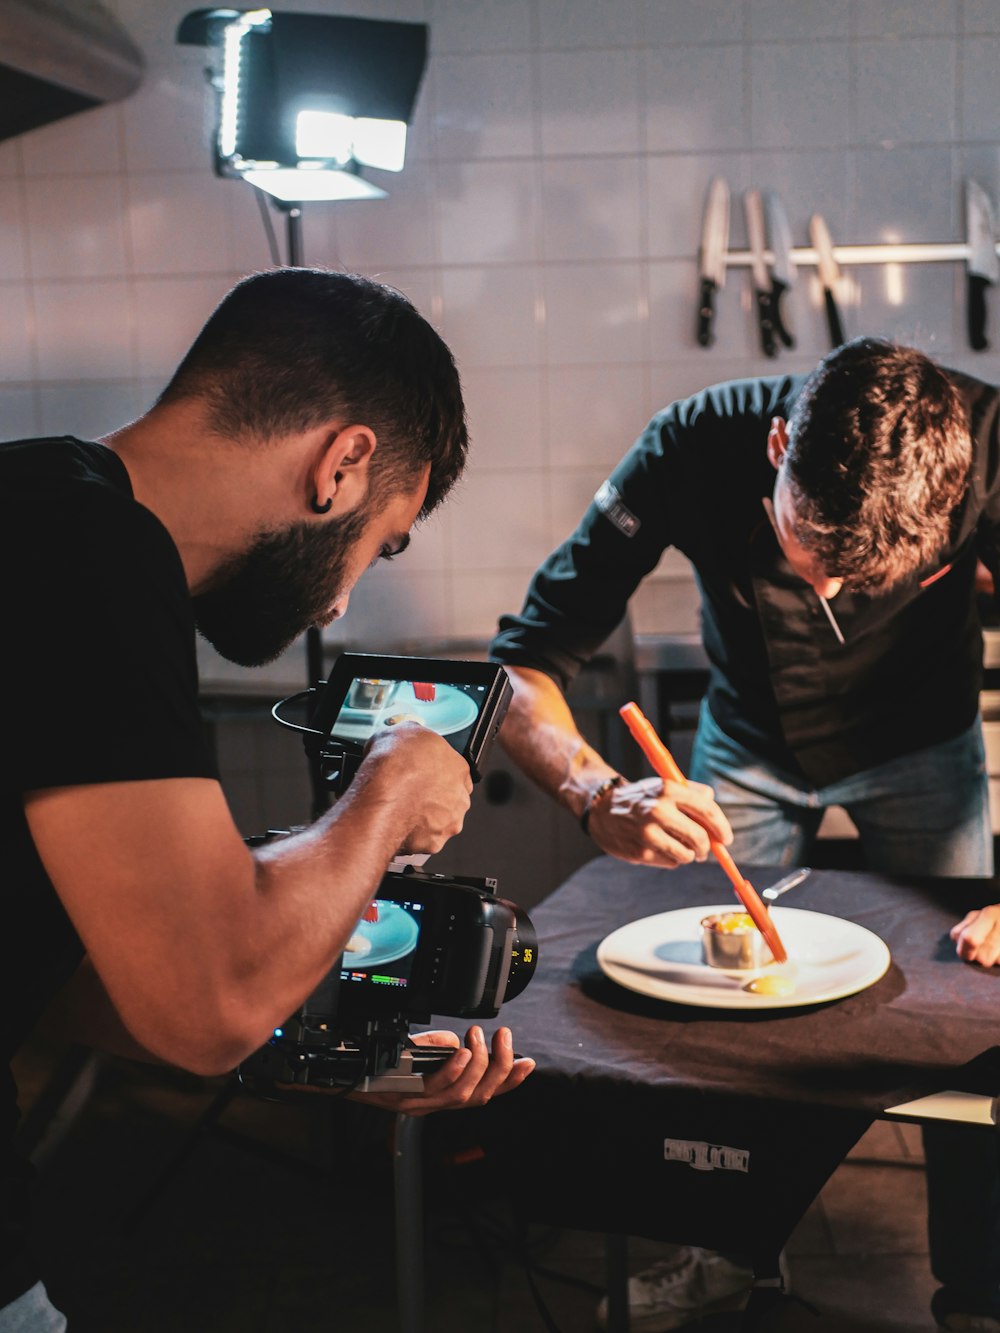 Zwei Männer in einer Küche bereiten Essen auf einem Teller zu